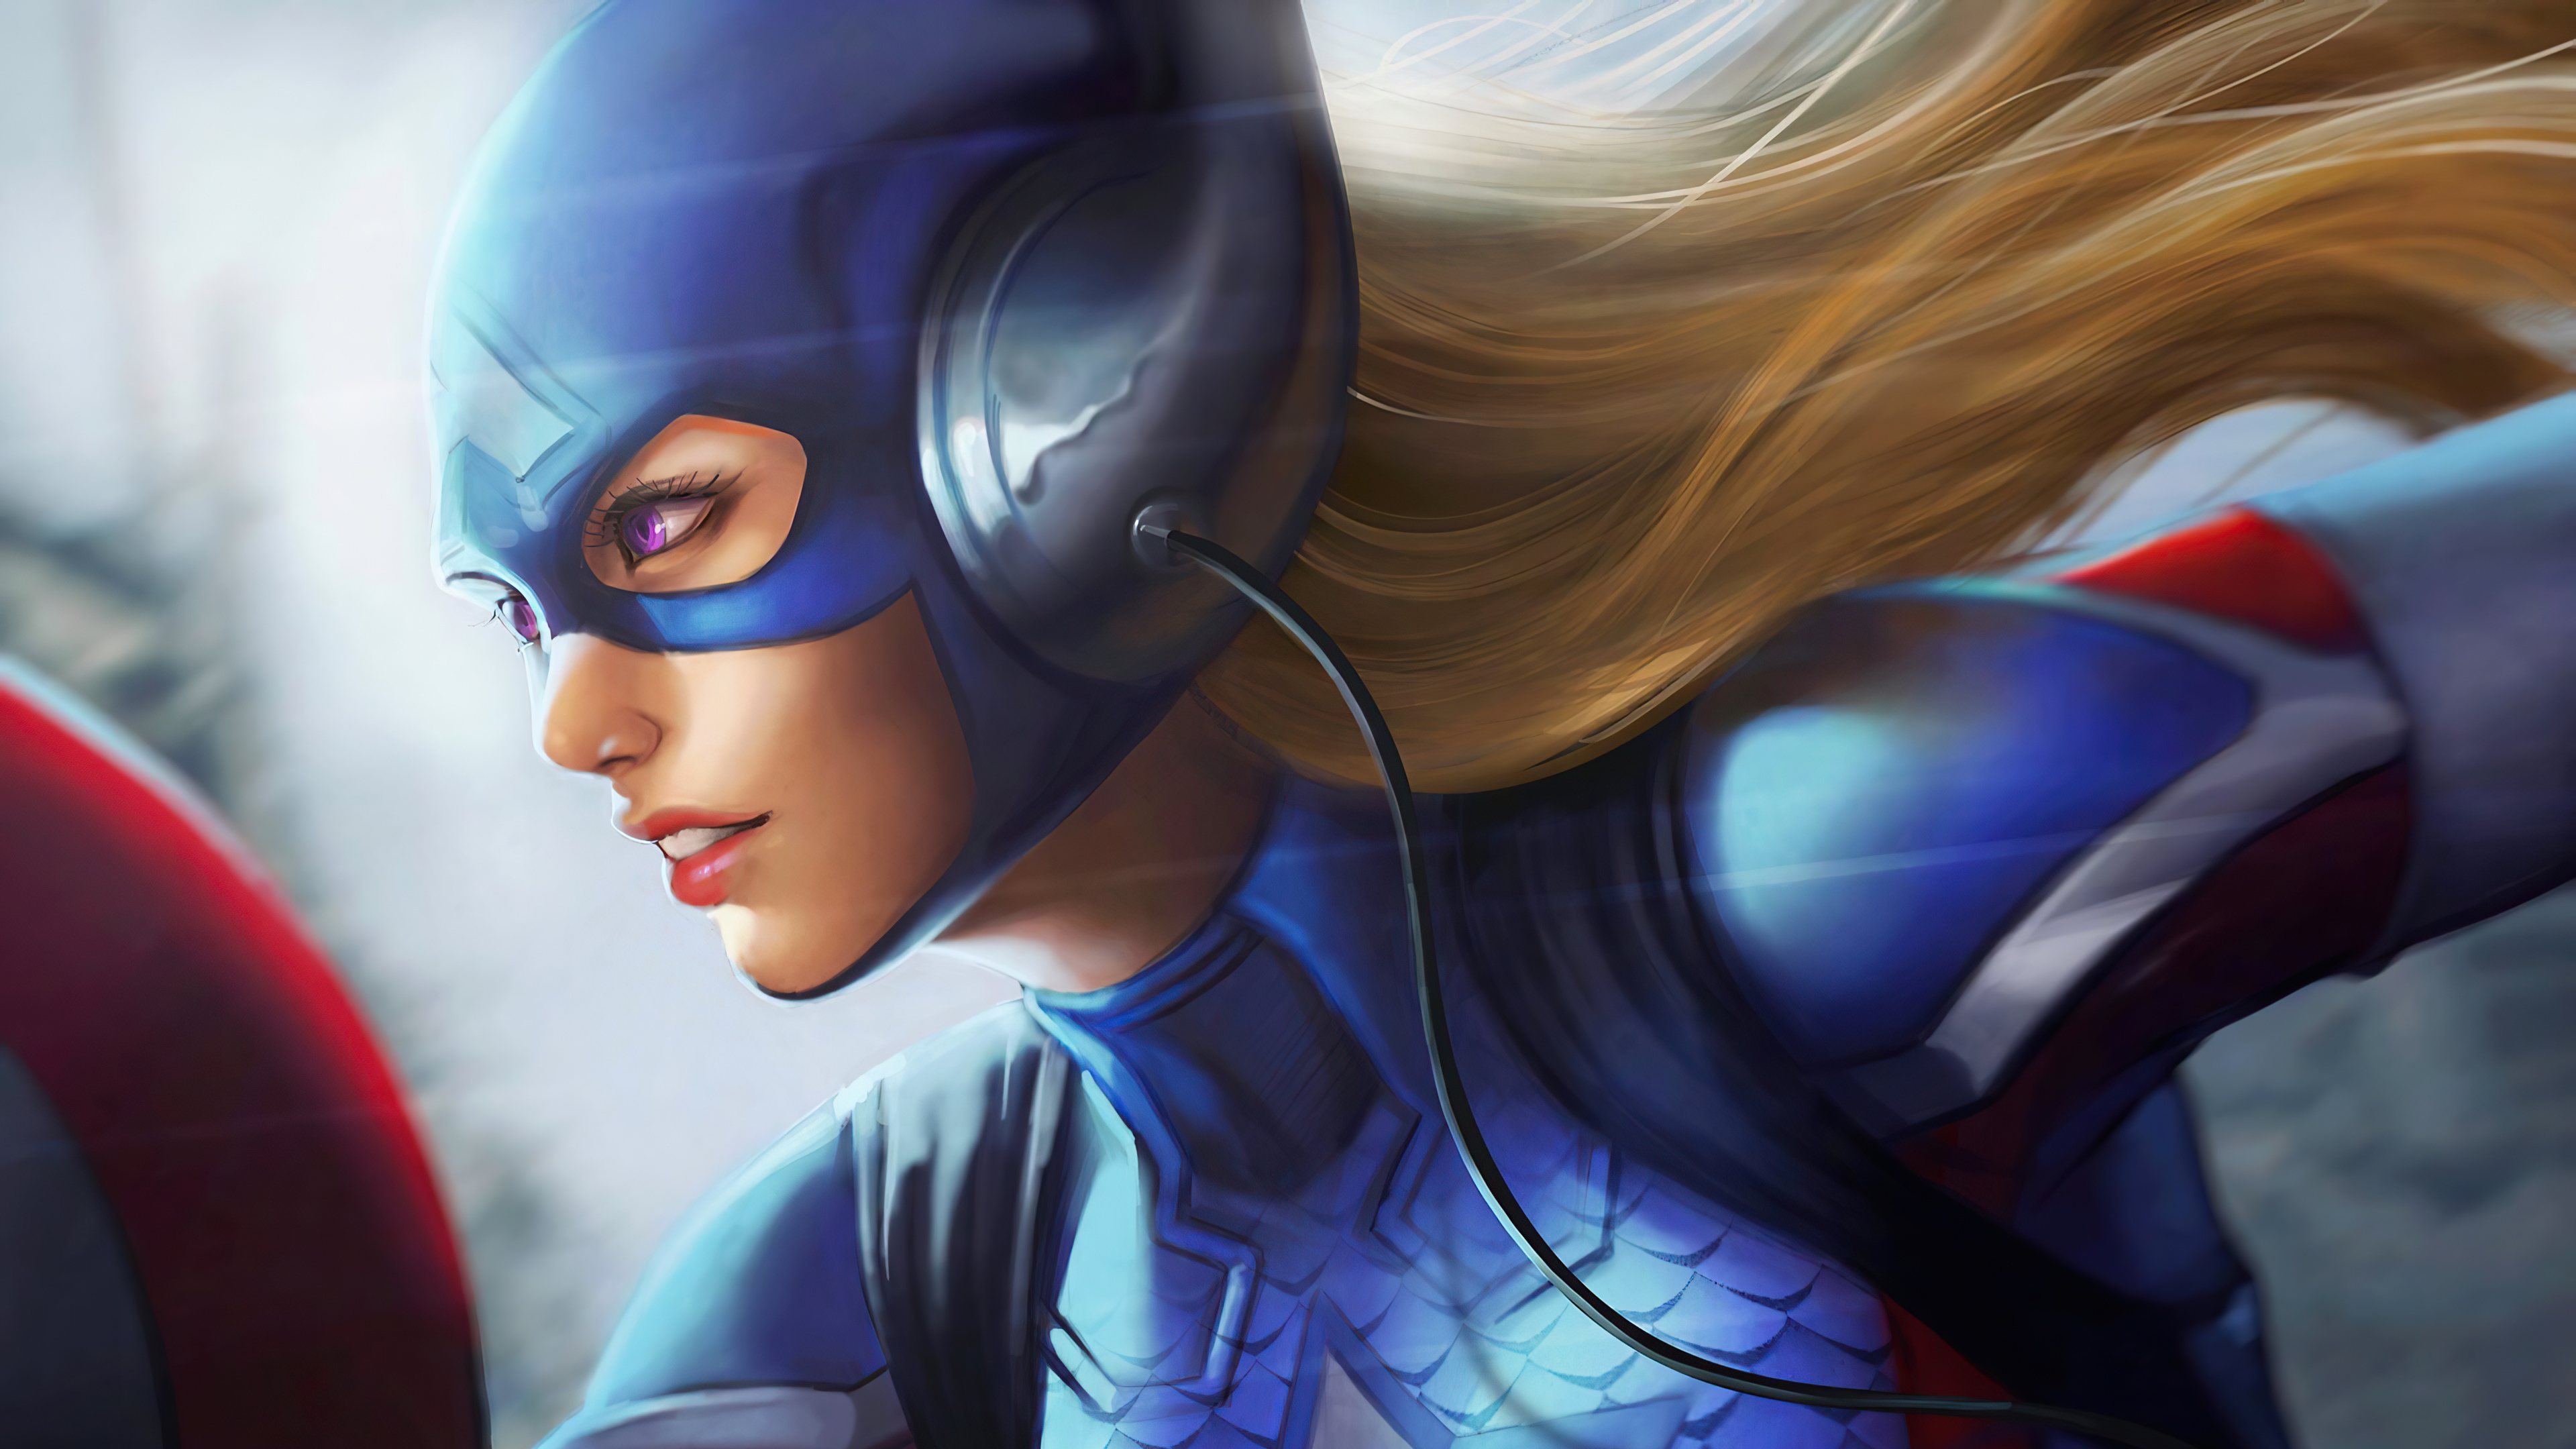 Captain America 4k Ultra HD Wallpaper by Stanley Artgerm Lau